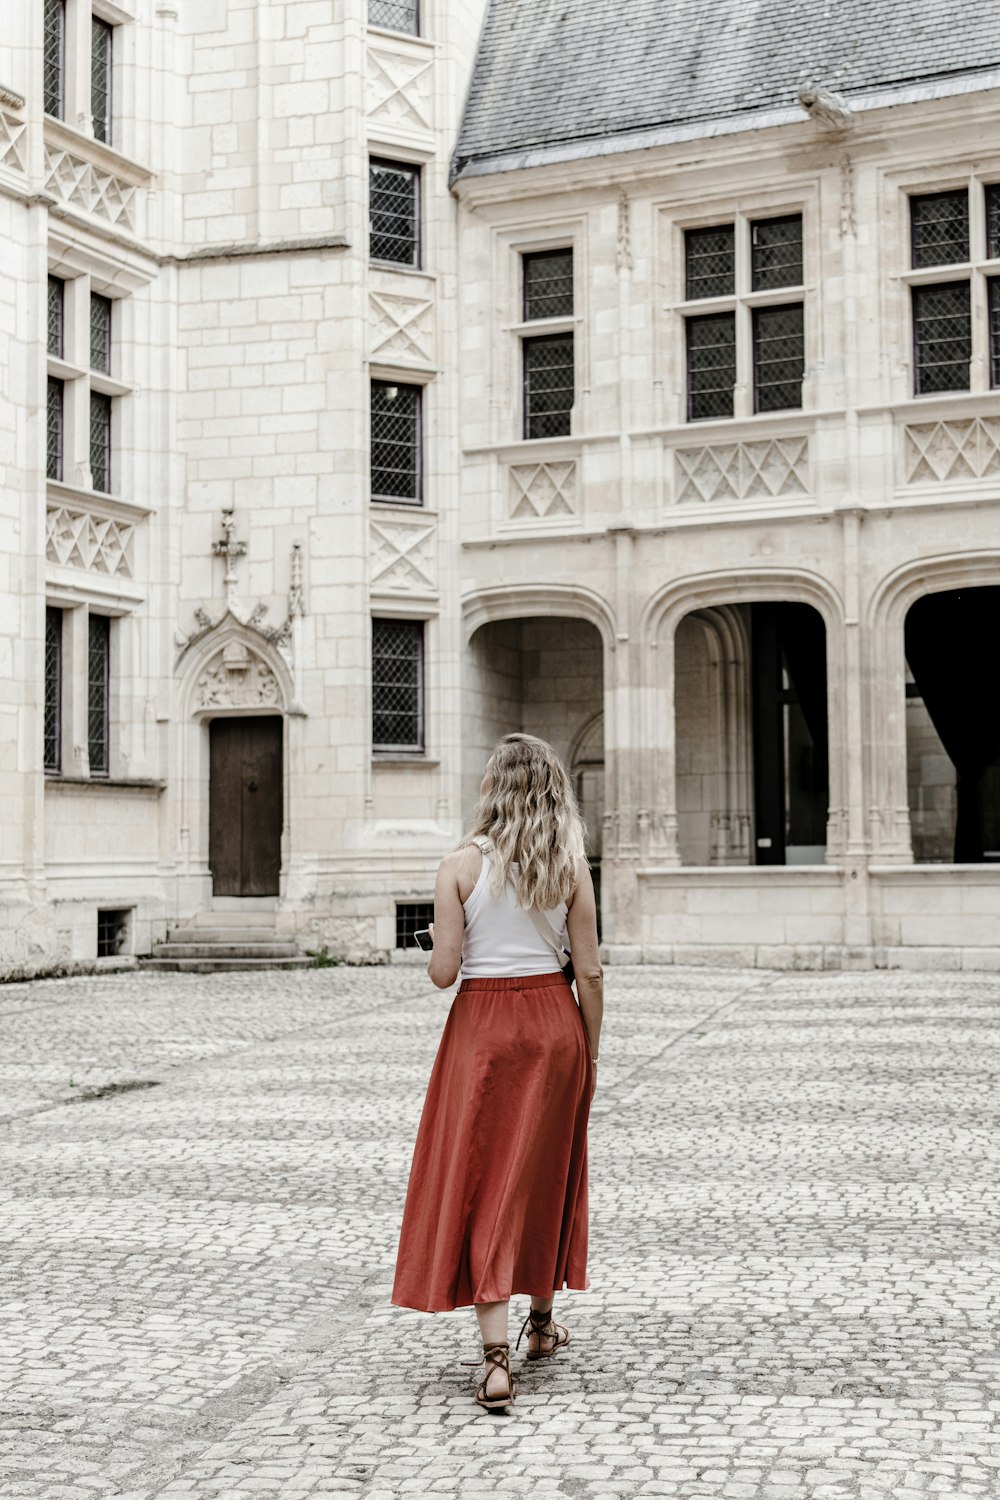 Una mujer con falda roja está parada frente a un gran edificio